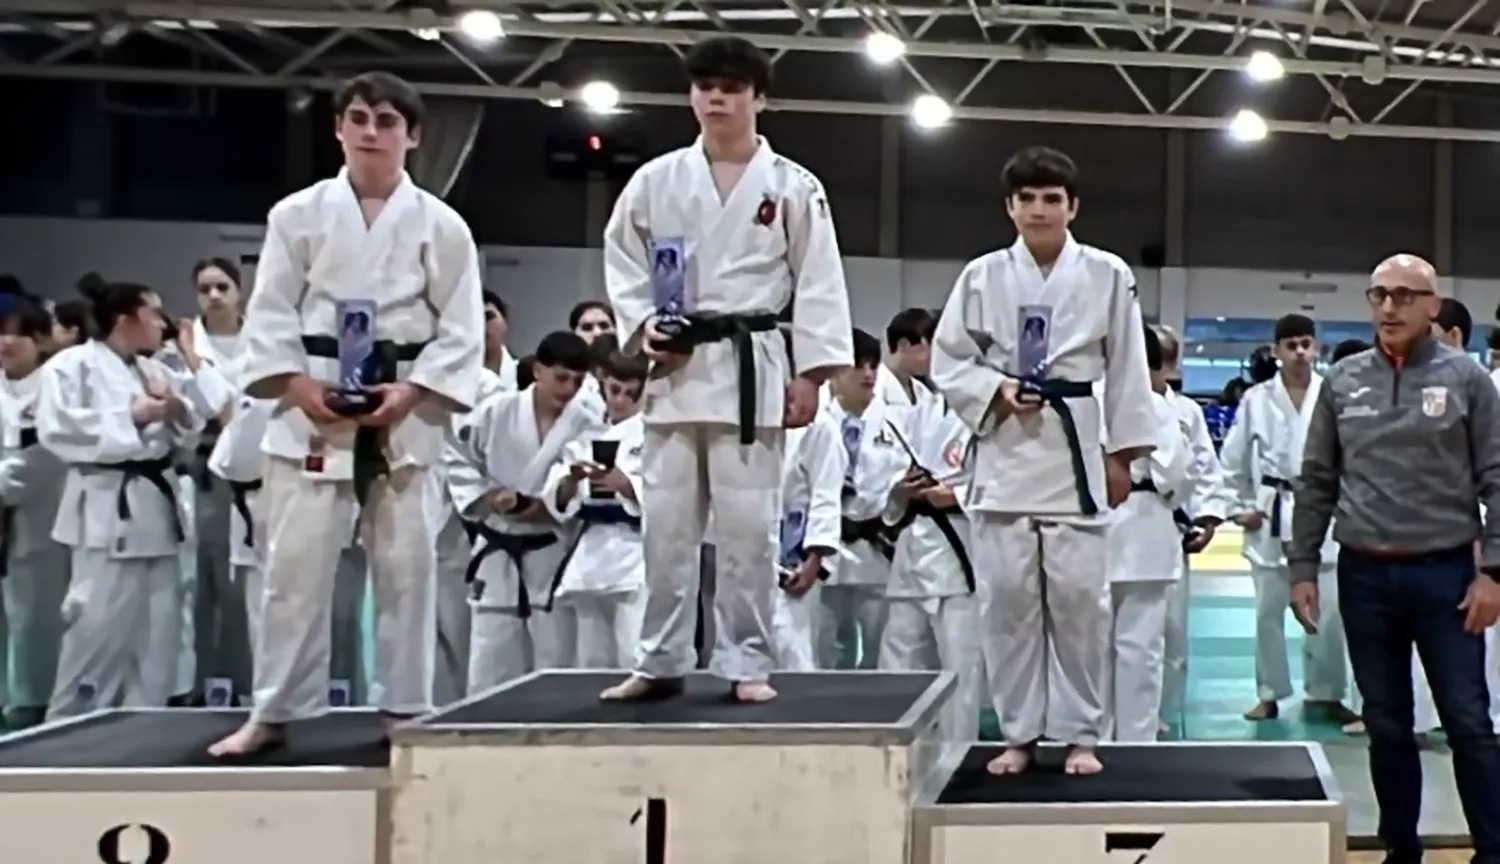 El ponferradino Andrés Vela proclamado campeón regional infantil de Judo